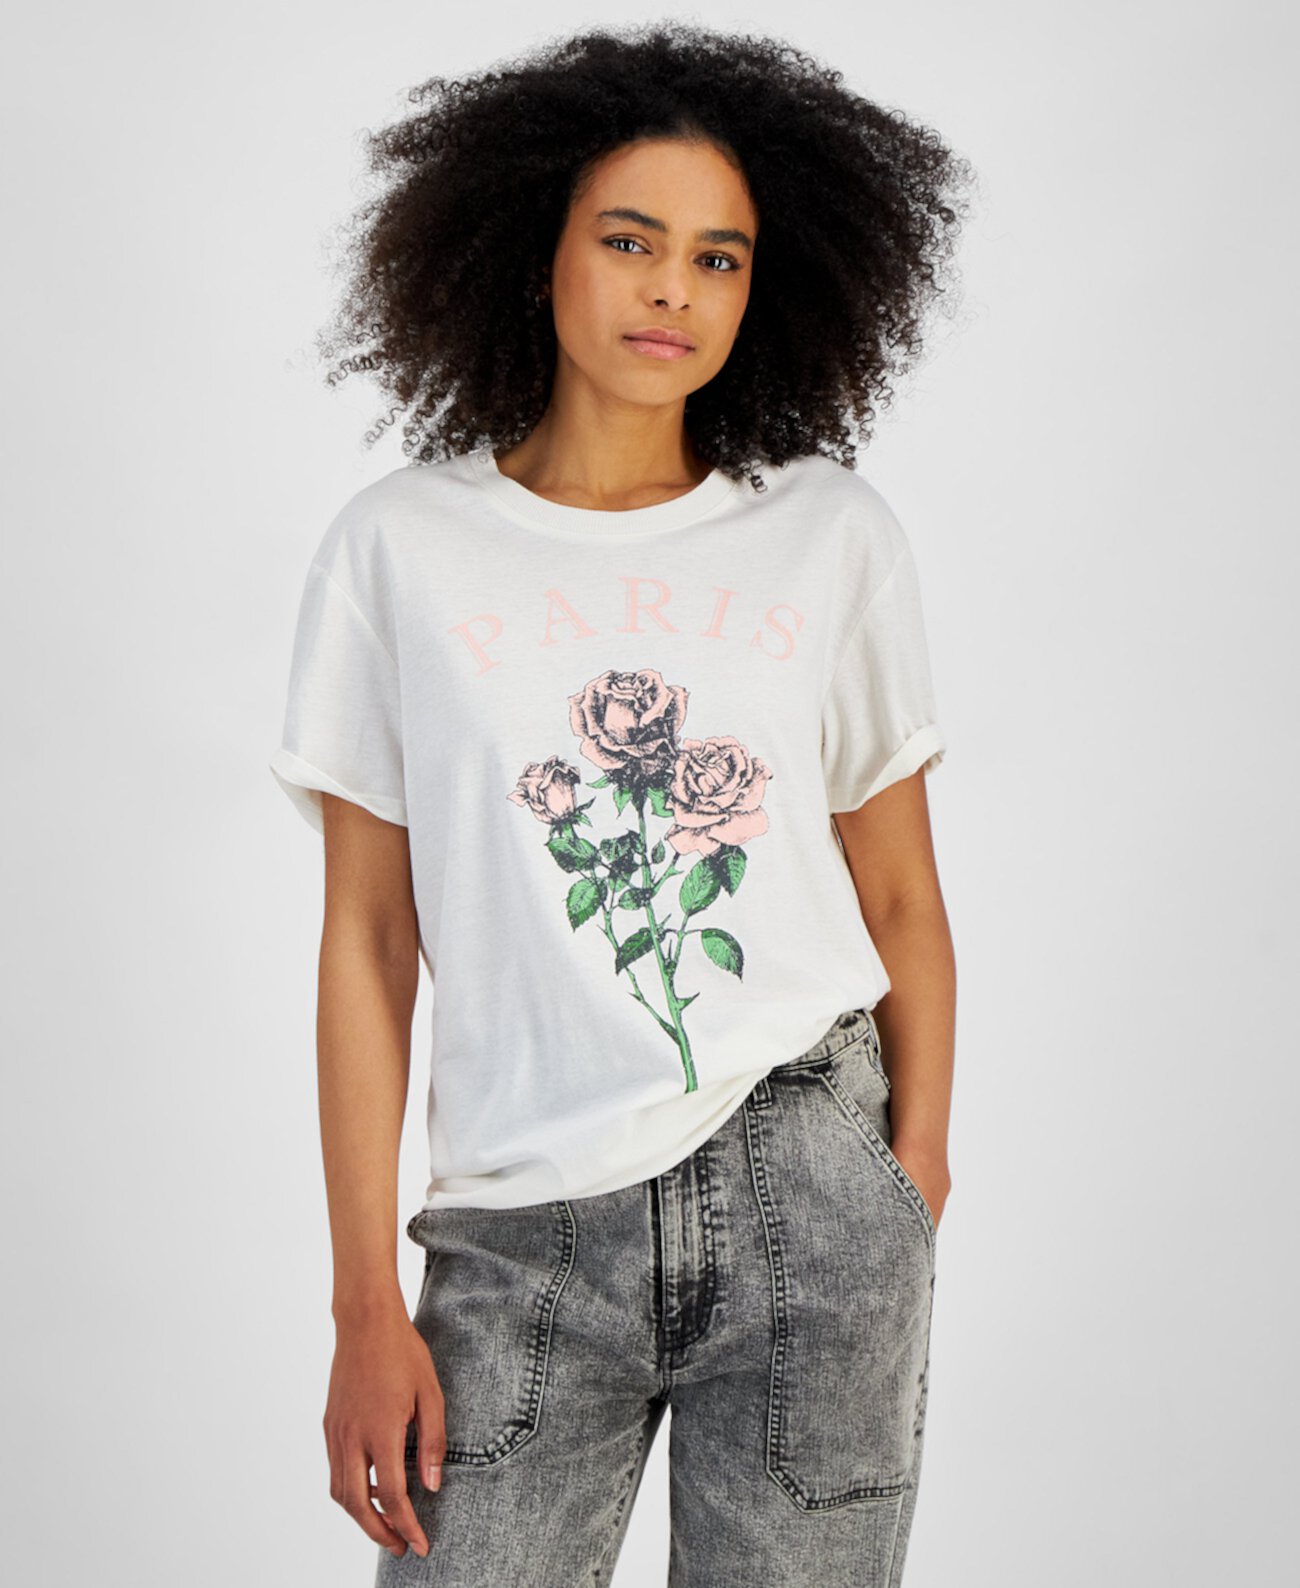 Juniors' Paris Graphic T-Shirt Self Esteem